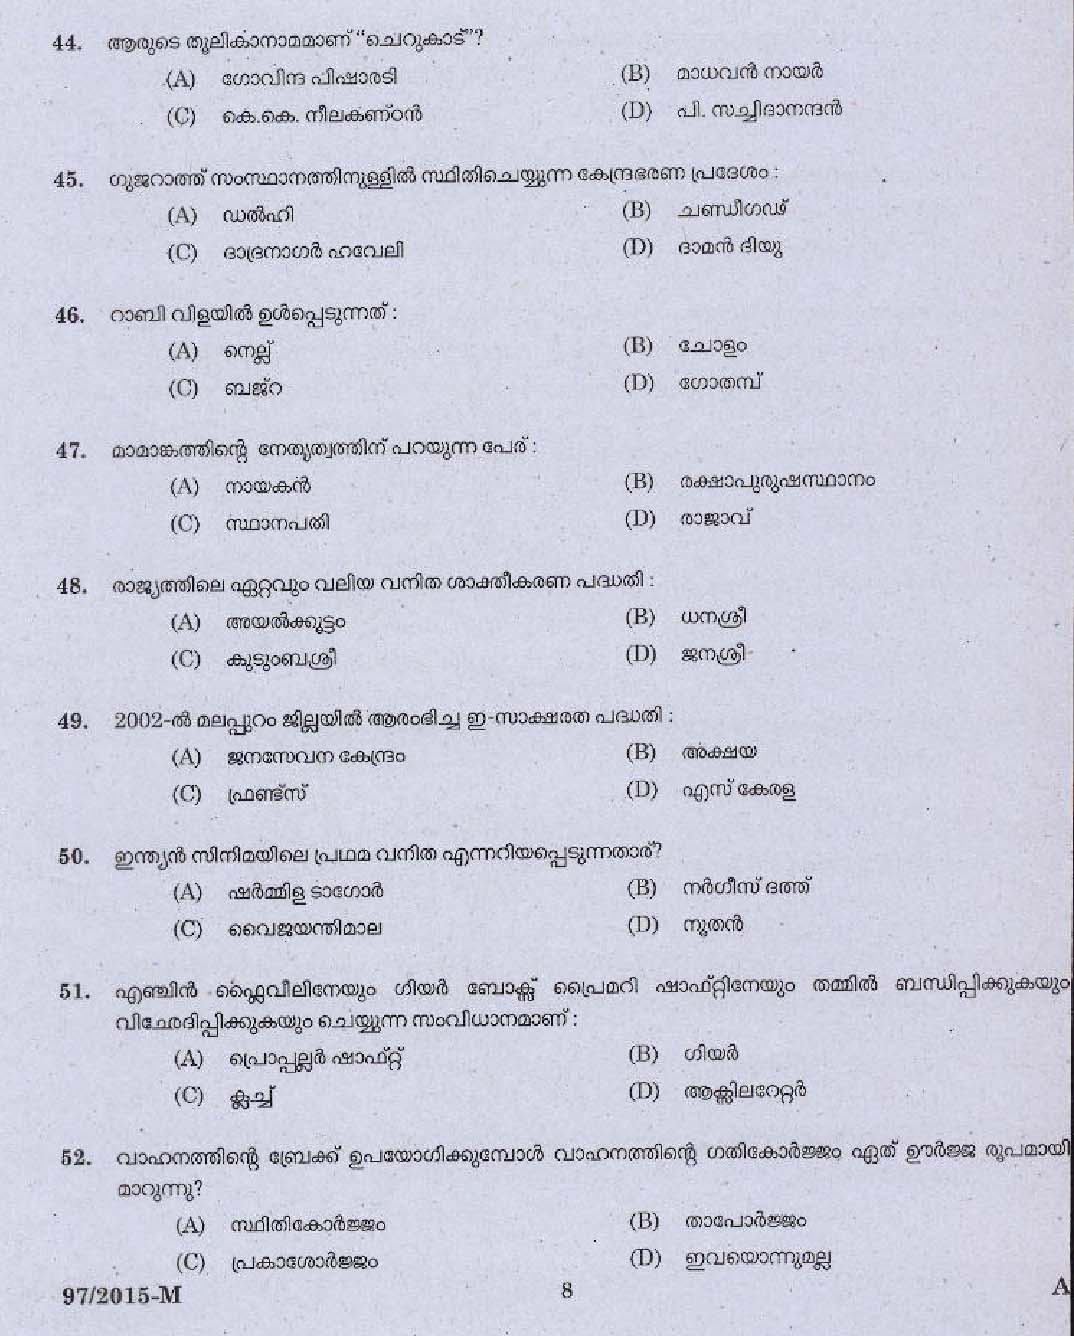 Kerala PSC Driver Grade II Exam 2015 Question Paper Code 972015 M 6